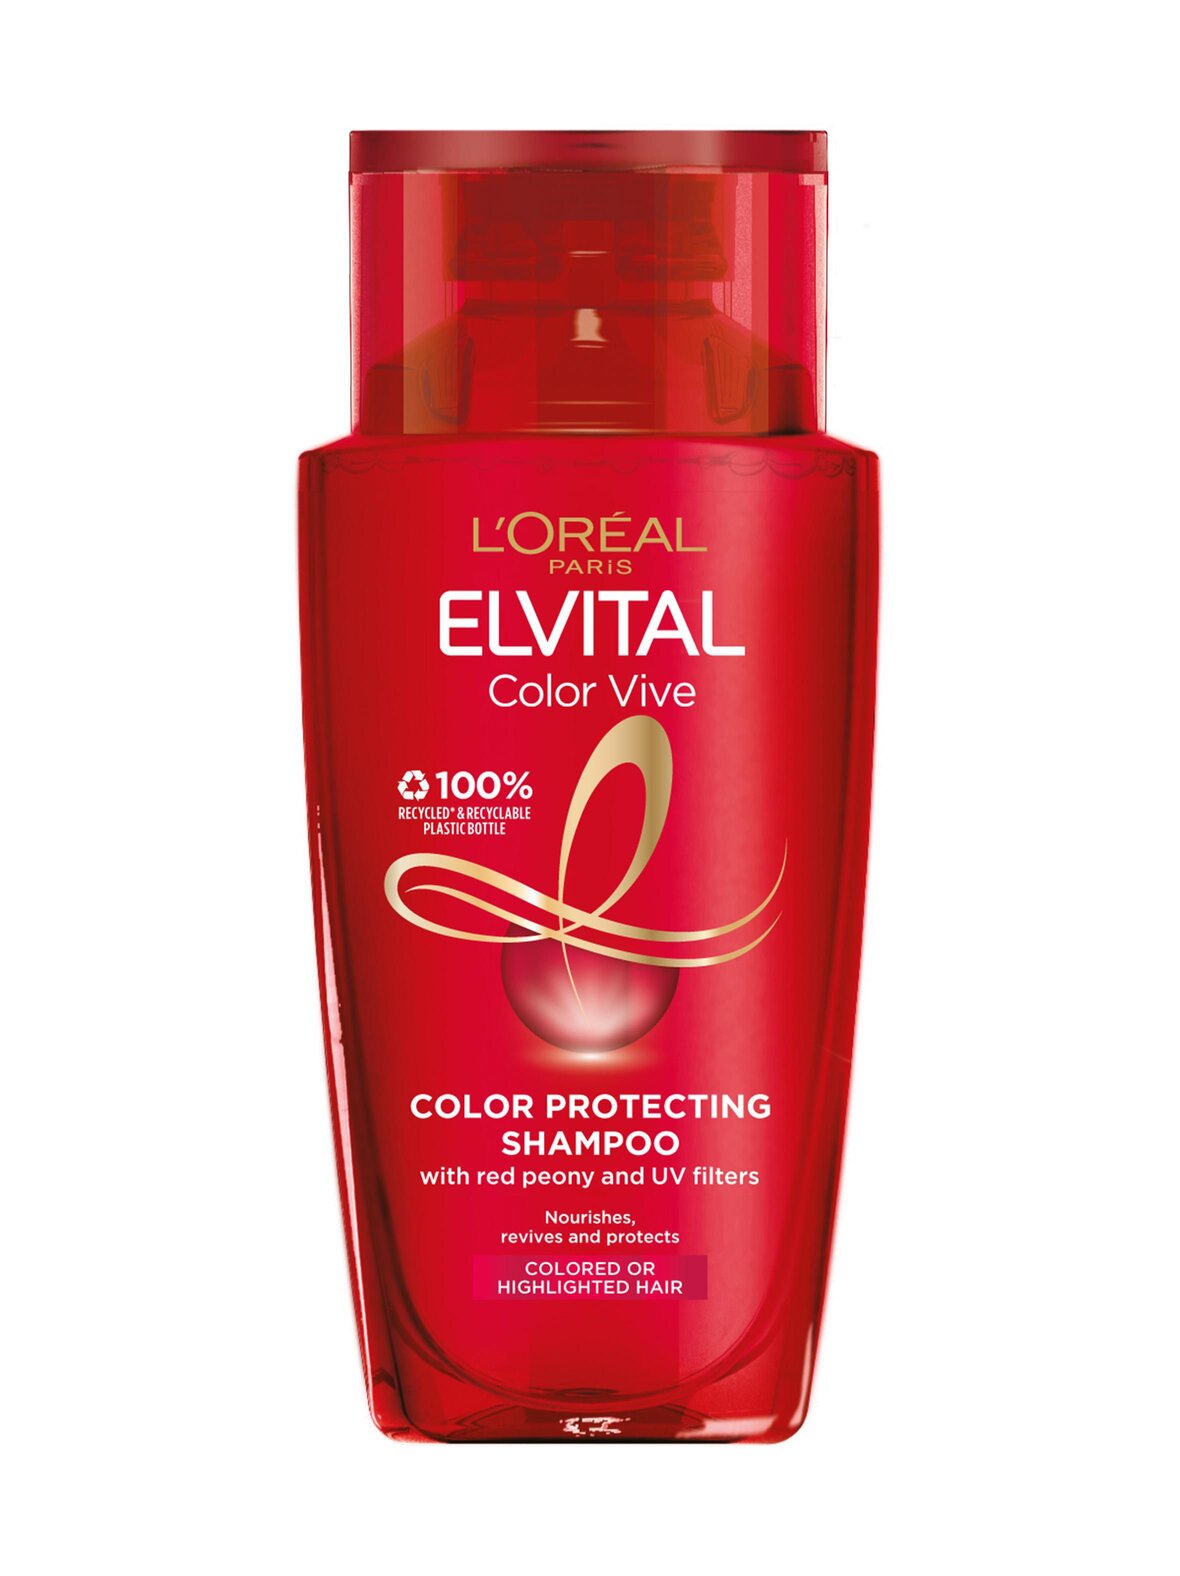 L"'Oréal Paris Elvital color-vive -shampoo